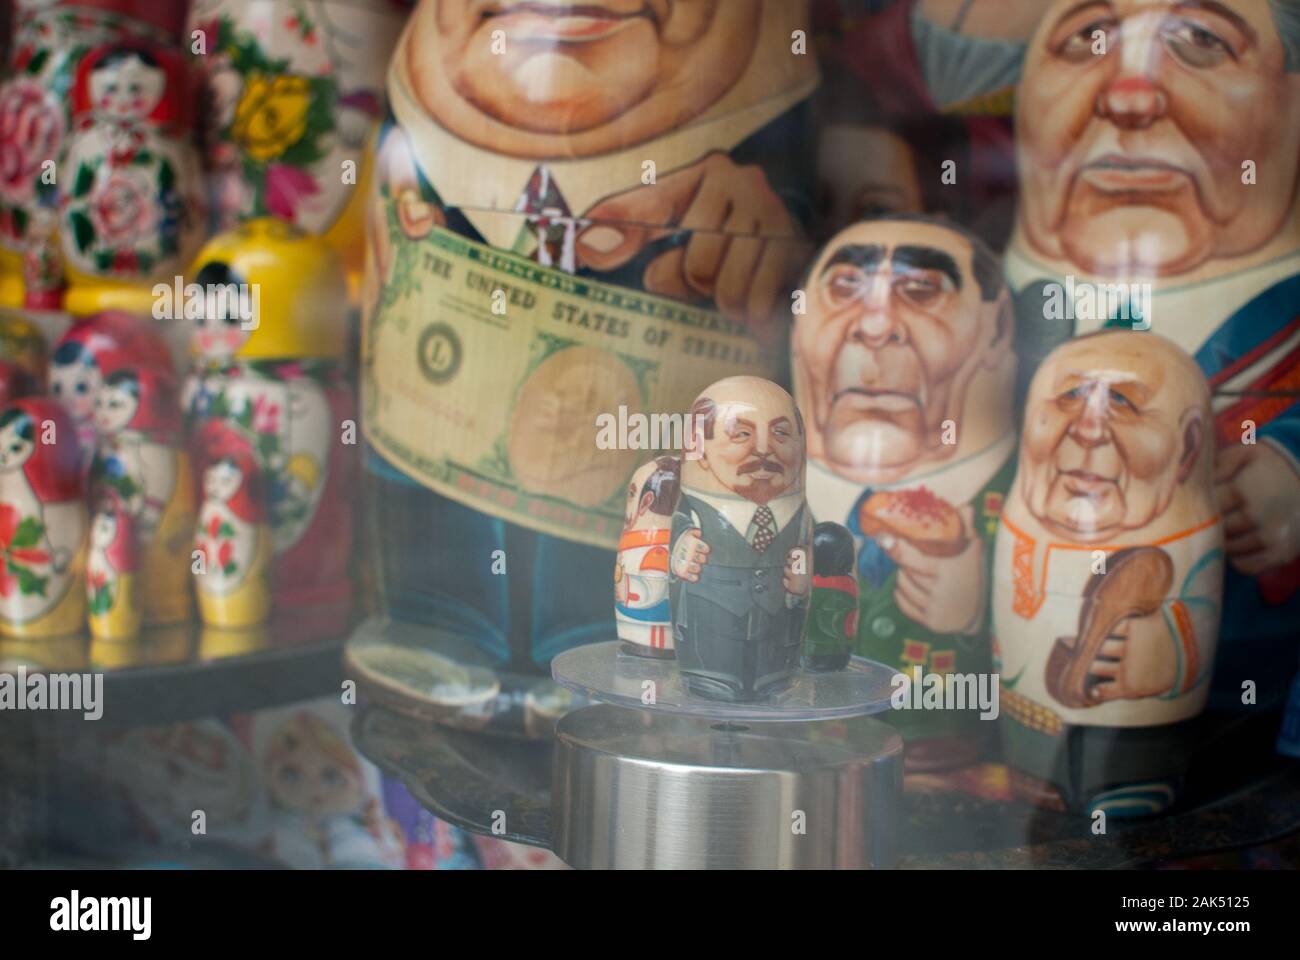 Bambole russe di politici e uomini di potere fotografati attraverso una finestra del negozio Foto Stock